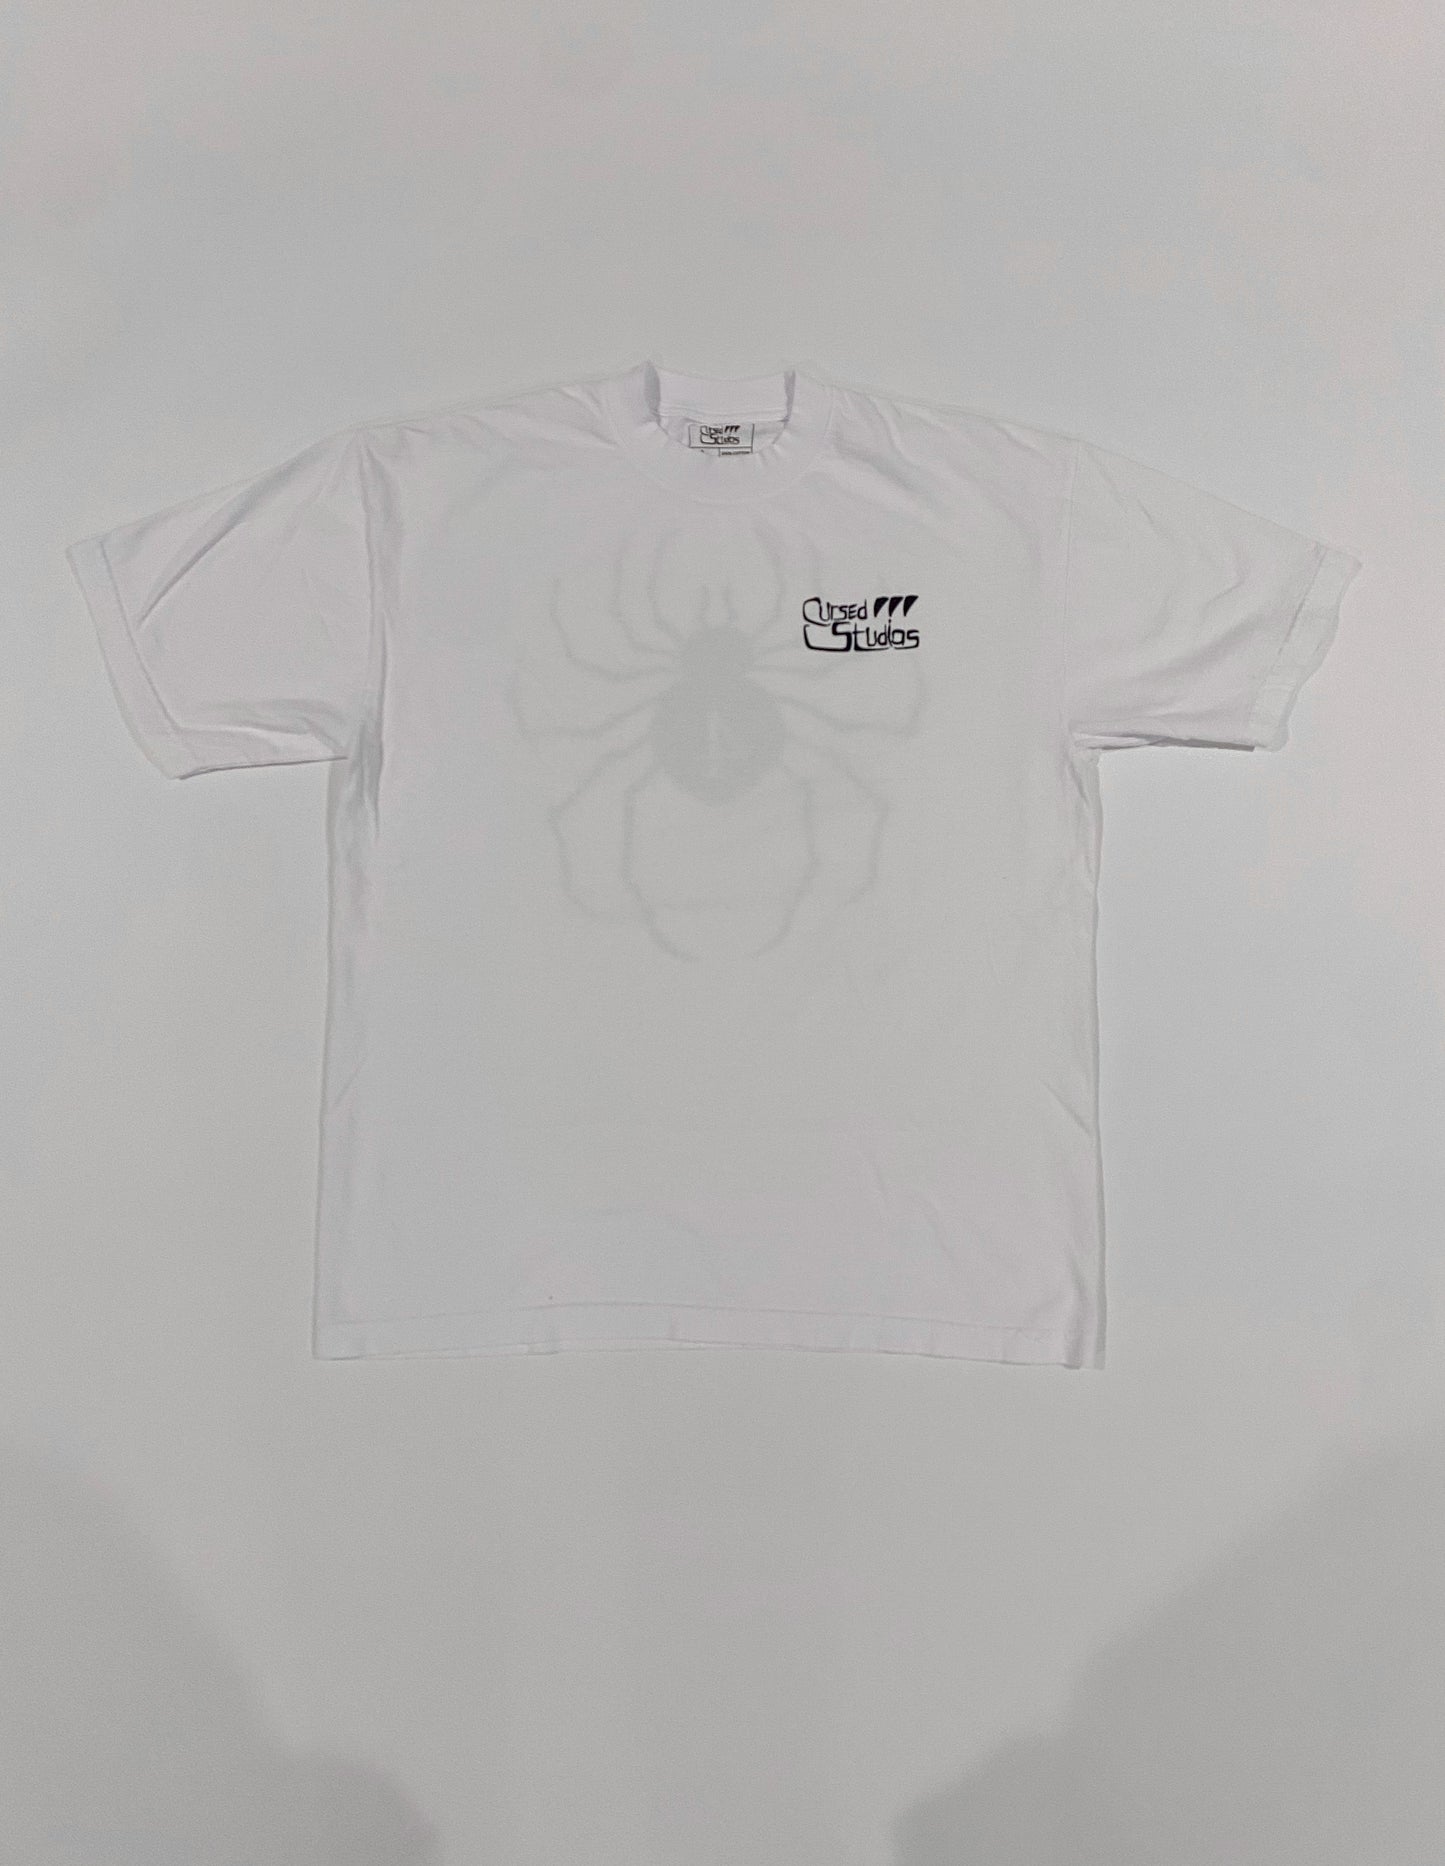 Phantom Troupe “No.0” T-shirt